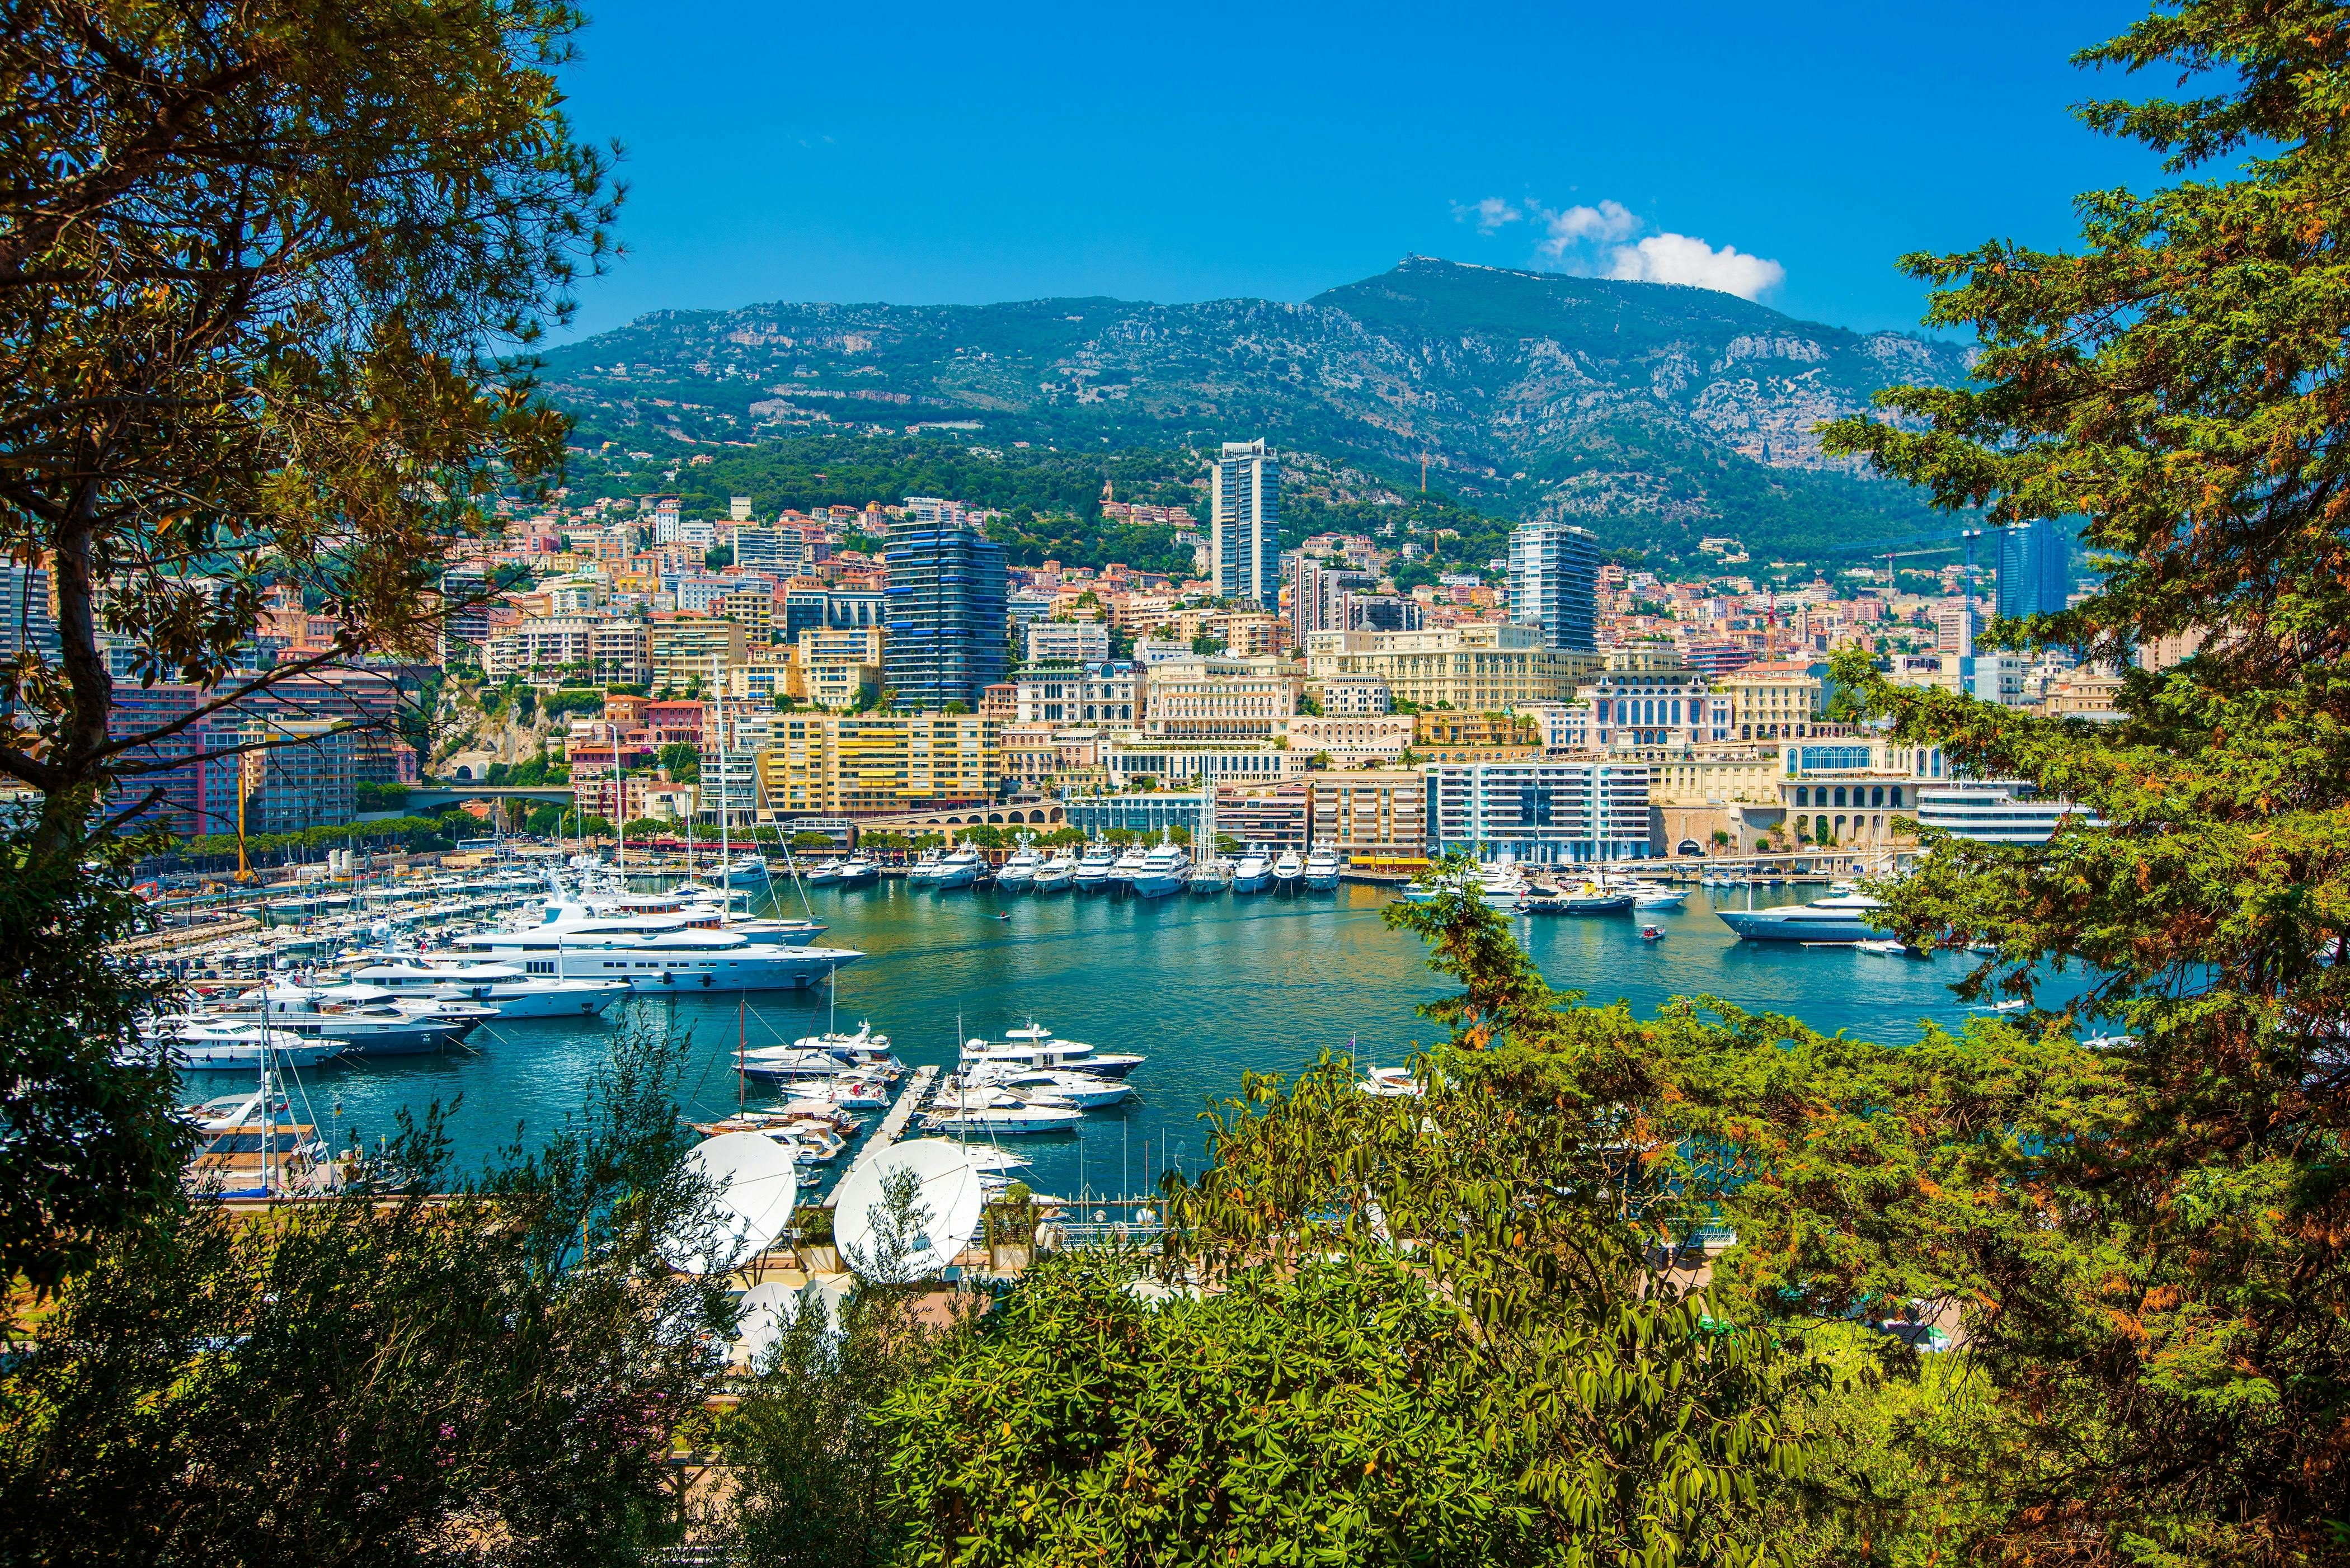 Halbtägige Gruppenreise von Eze, Monaco und Monte Carlo ab Nizza